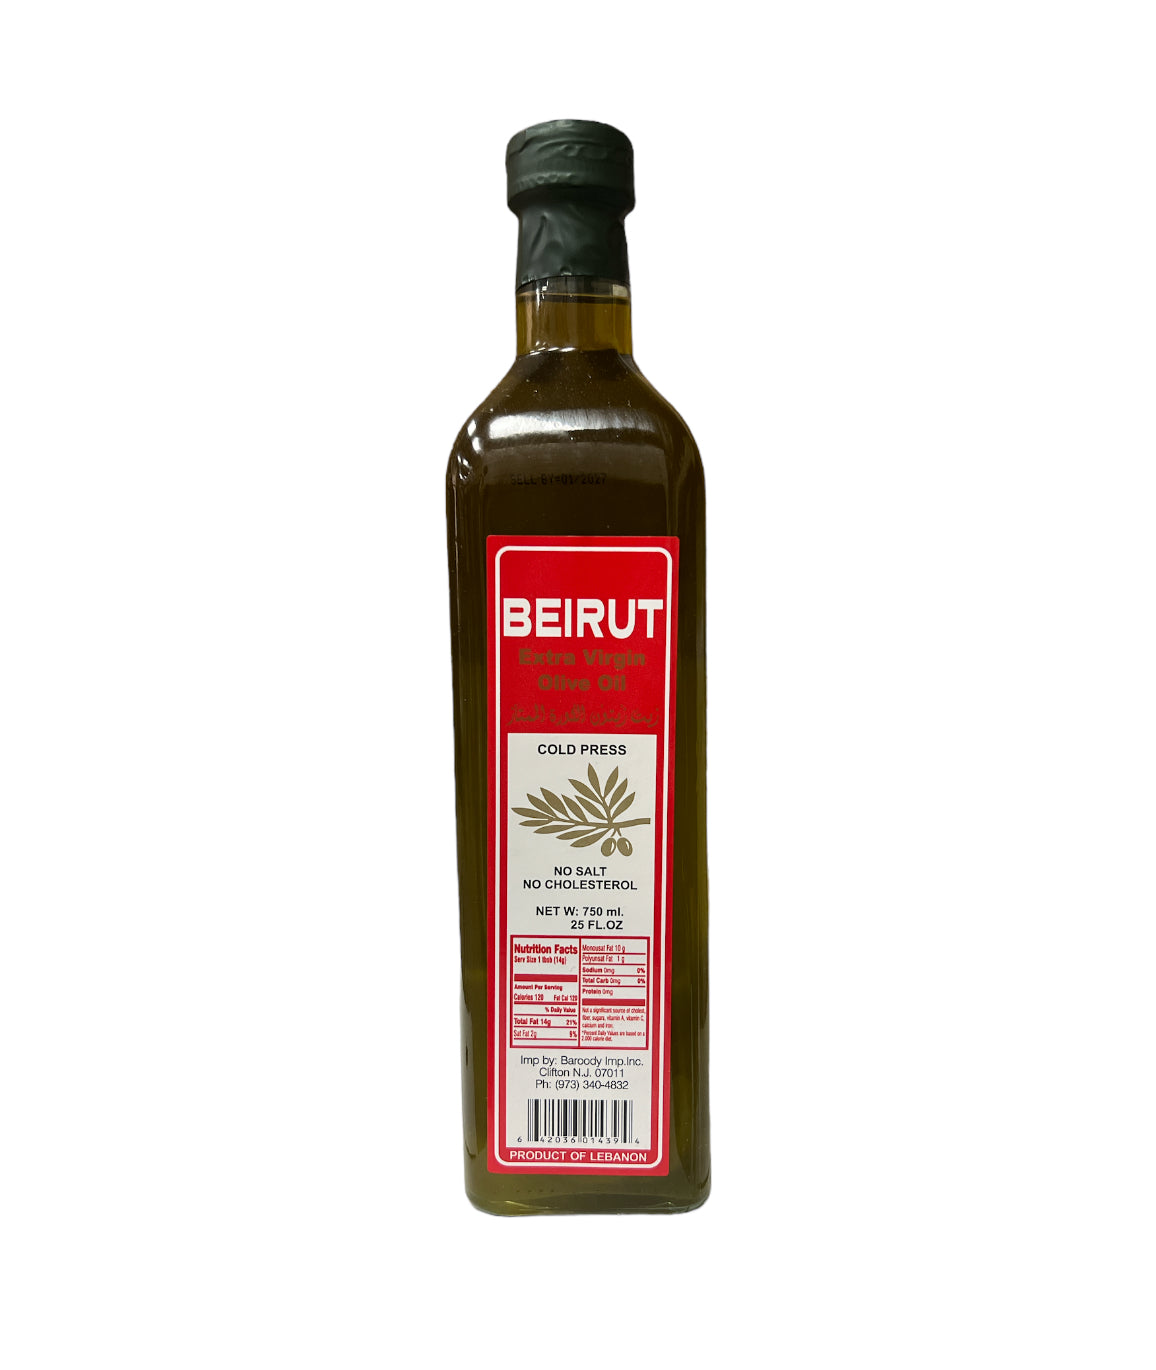 Beirut Extra Virgin Olive Oil